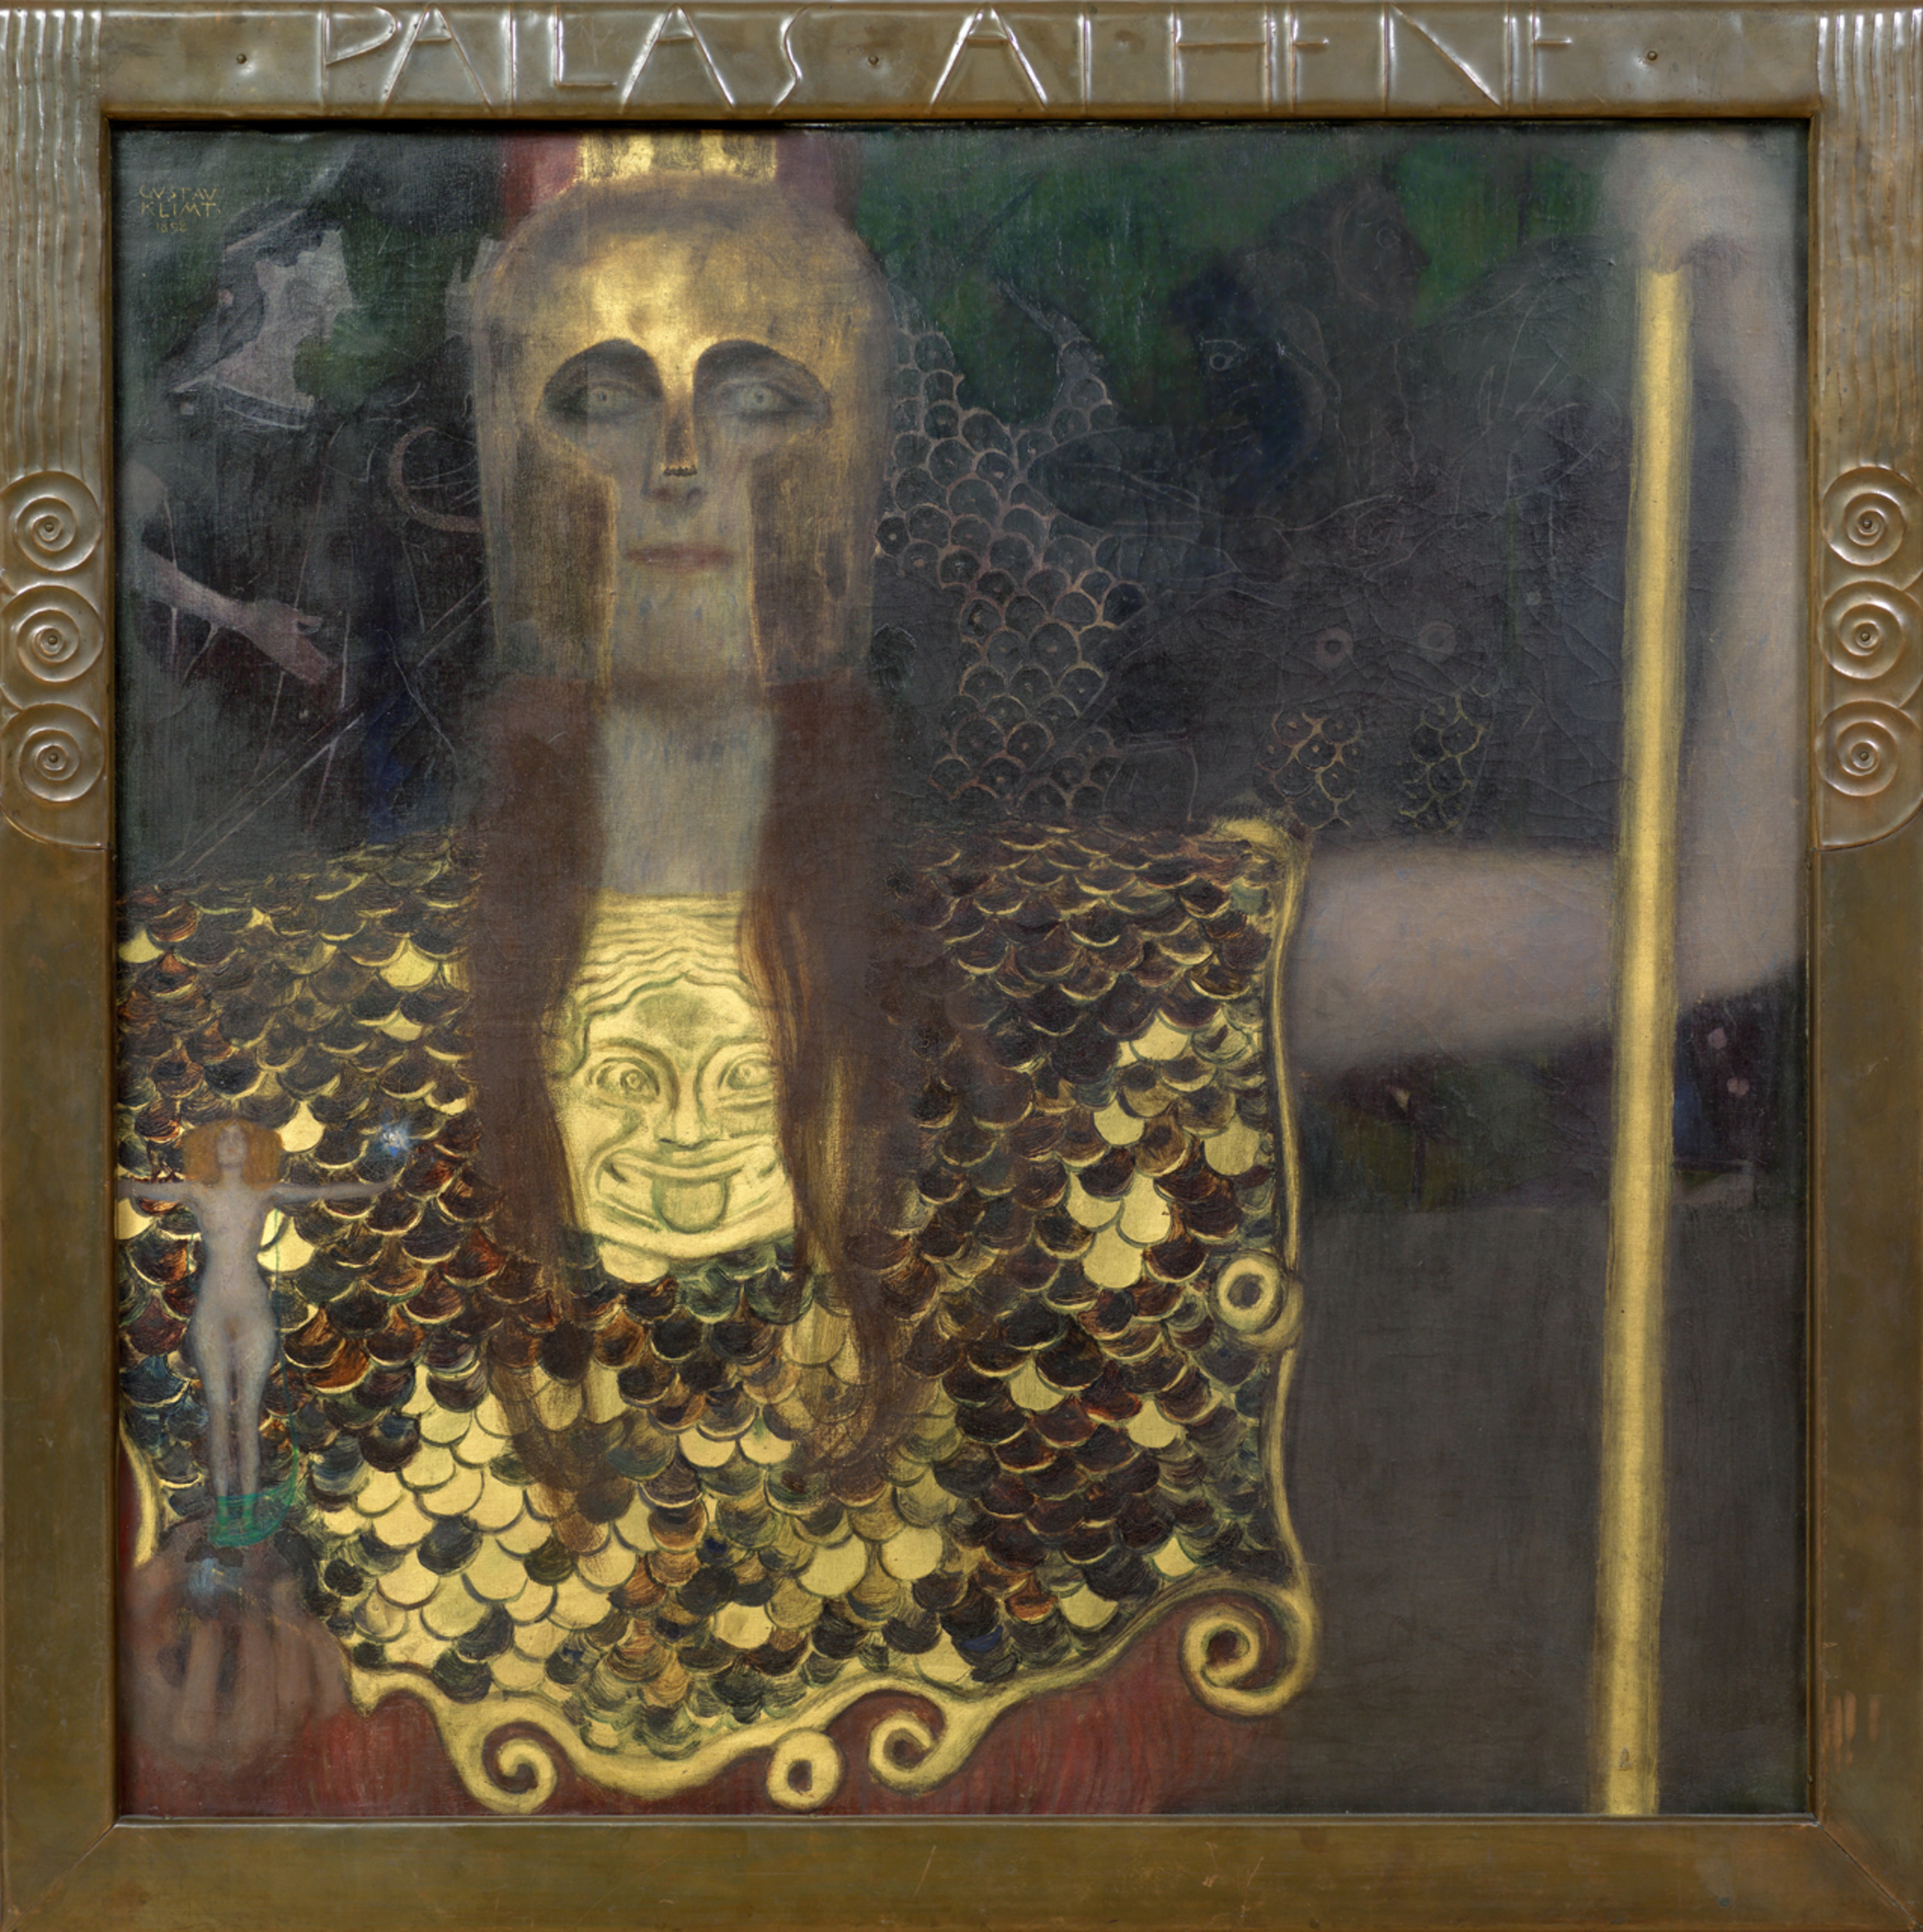 Pallas Athene by Gustav Klimt - 1898 - 75×75 cm Wien Museum